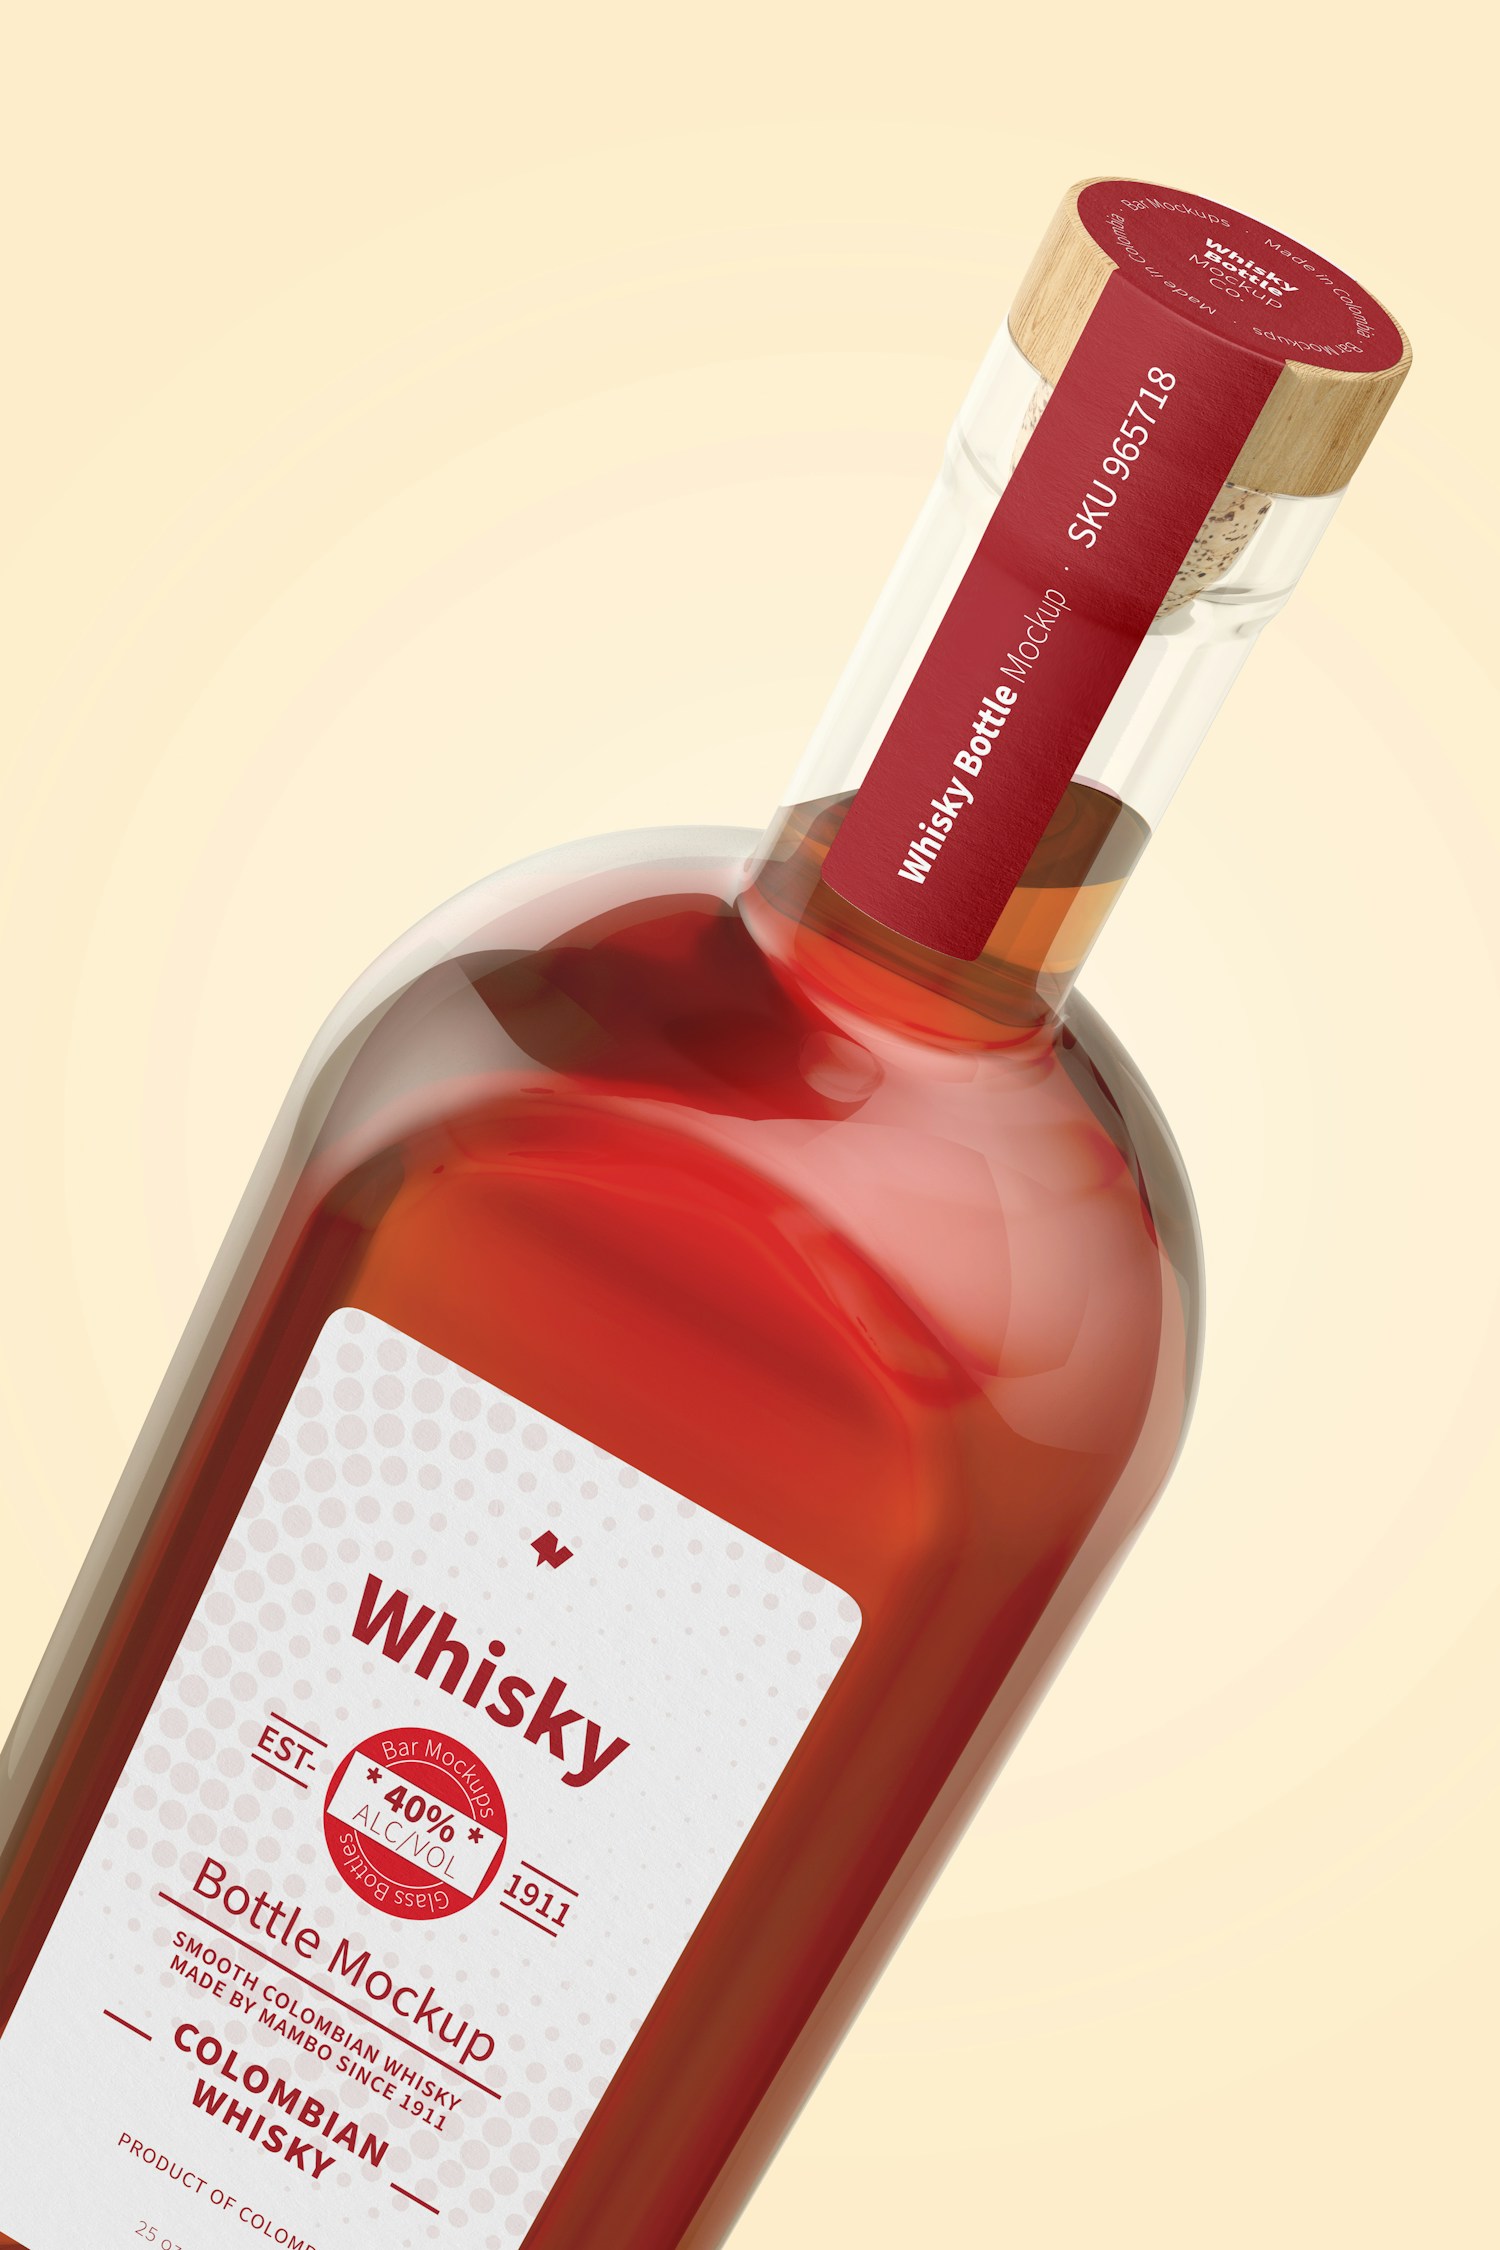 Whisky Bottle Mockup, Close-Up